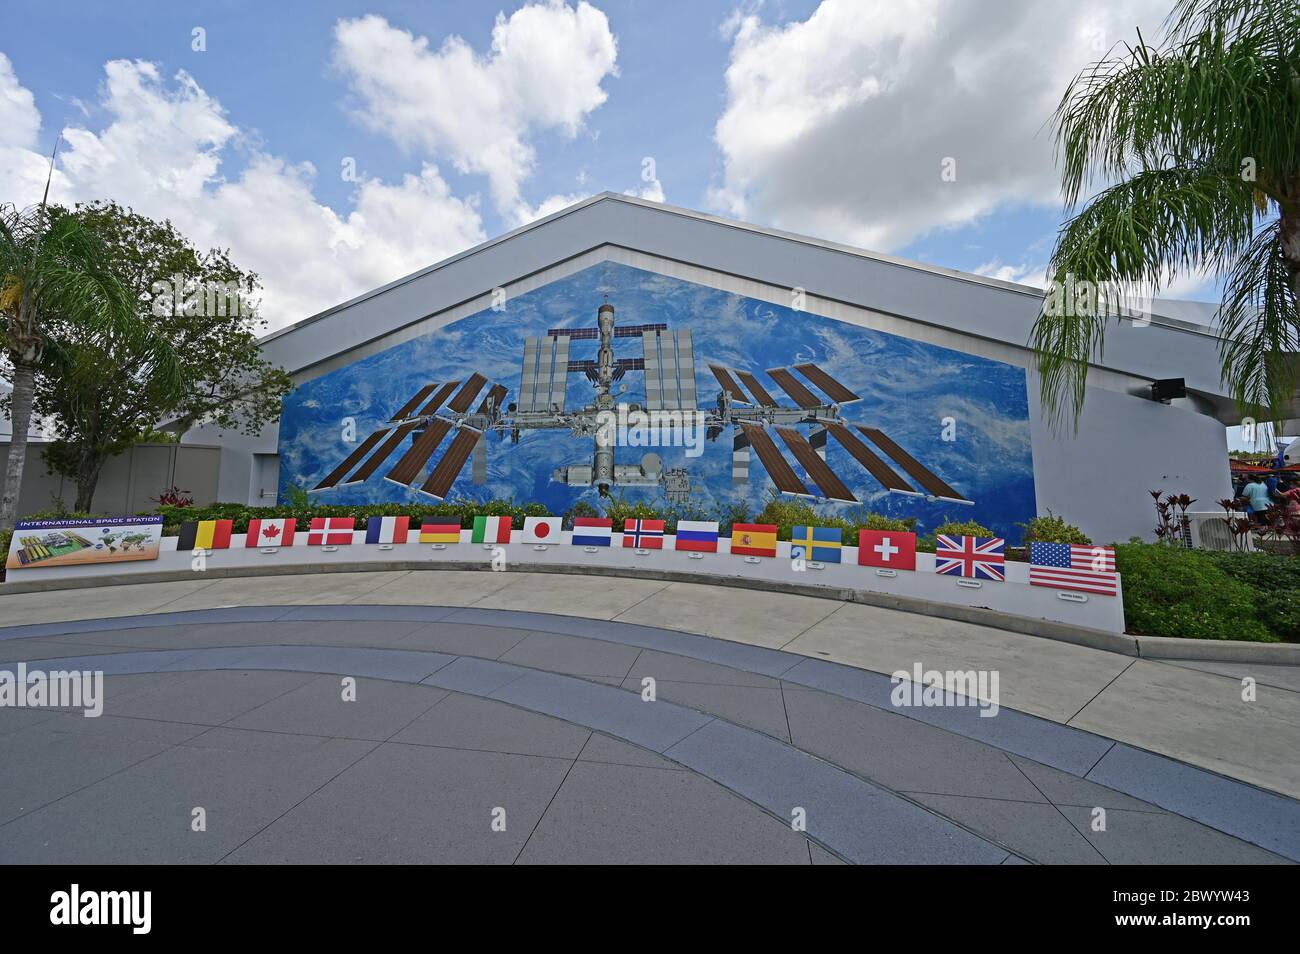 Kennedy Space Center, Merritt Island, Florida - 30. Mai 2020 - Wandbild der Internationalen Raumstation schmückt die Seite des Gebäudes im Besucherzentrum. Stockfoto